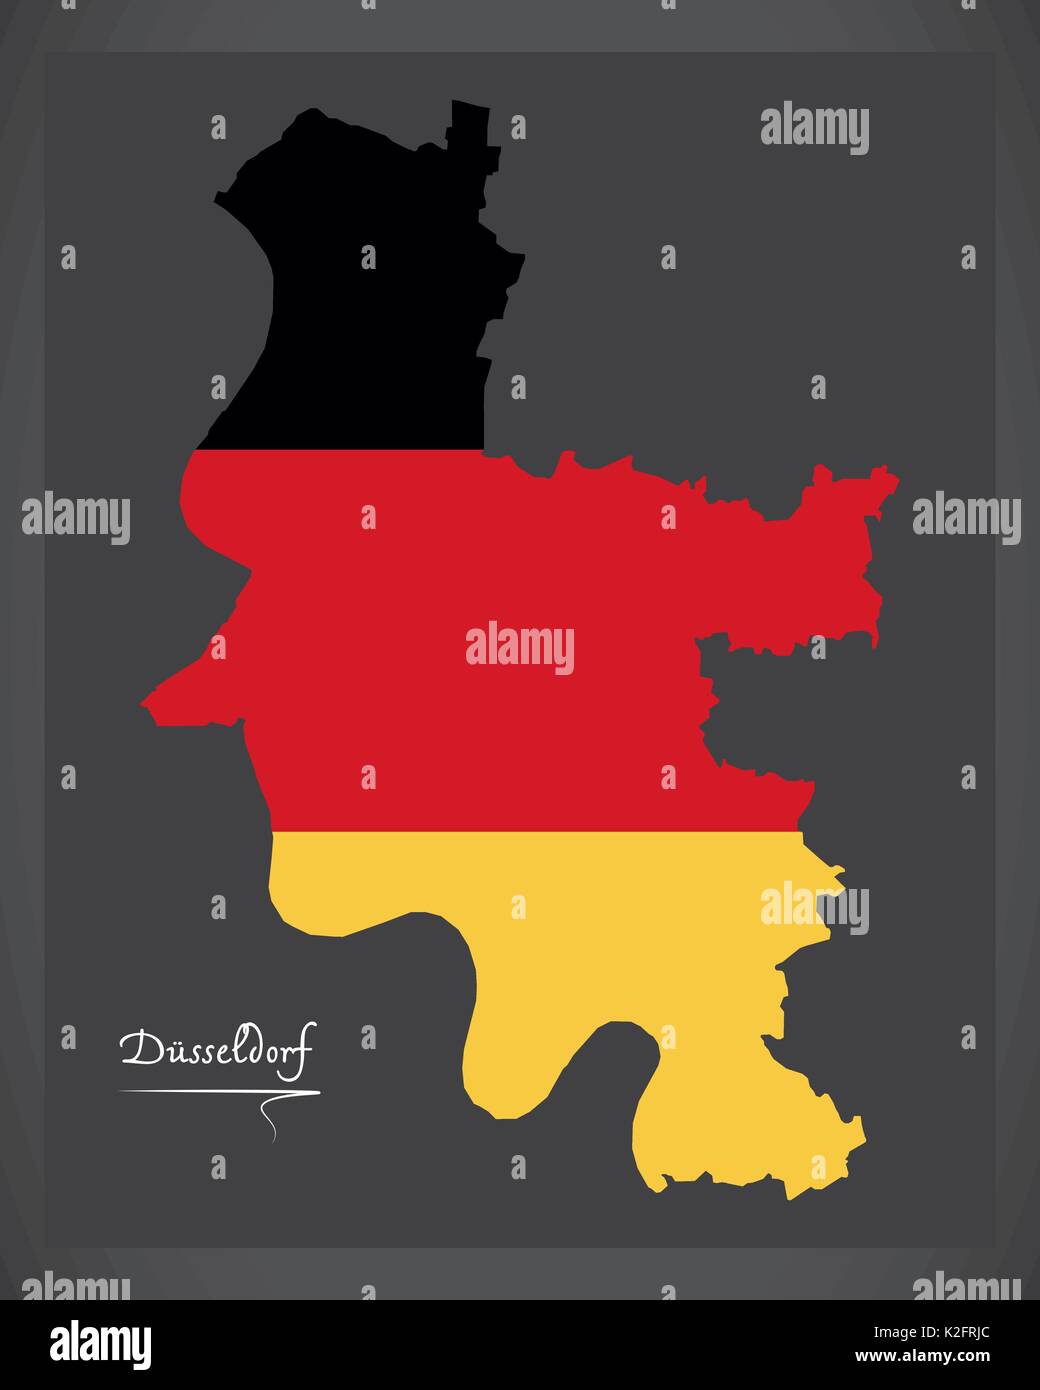 Düsseldorf City Karte mit deutschen Nationalflagge Abbildung Stock Vektor